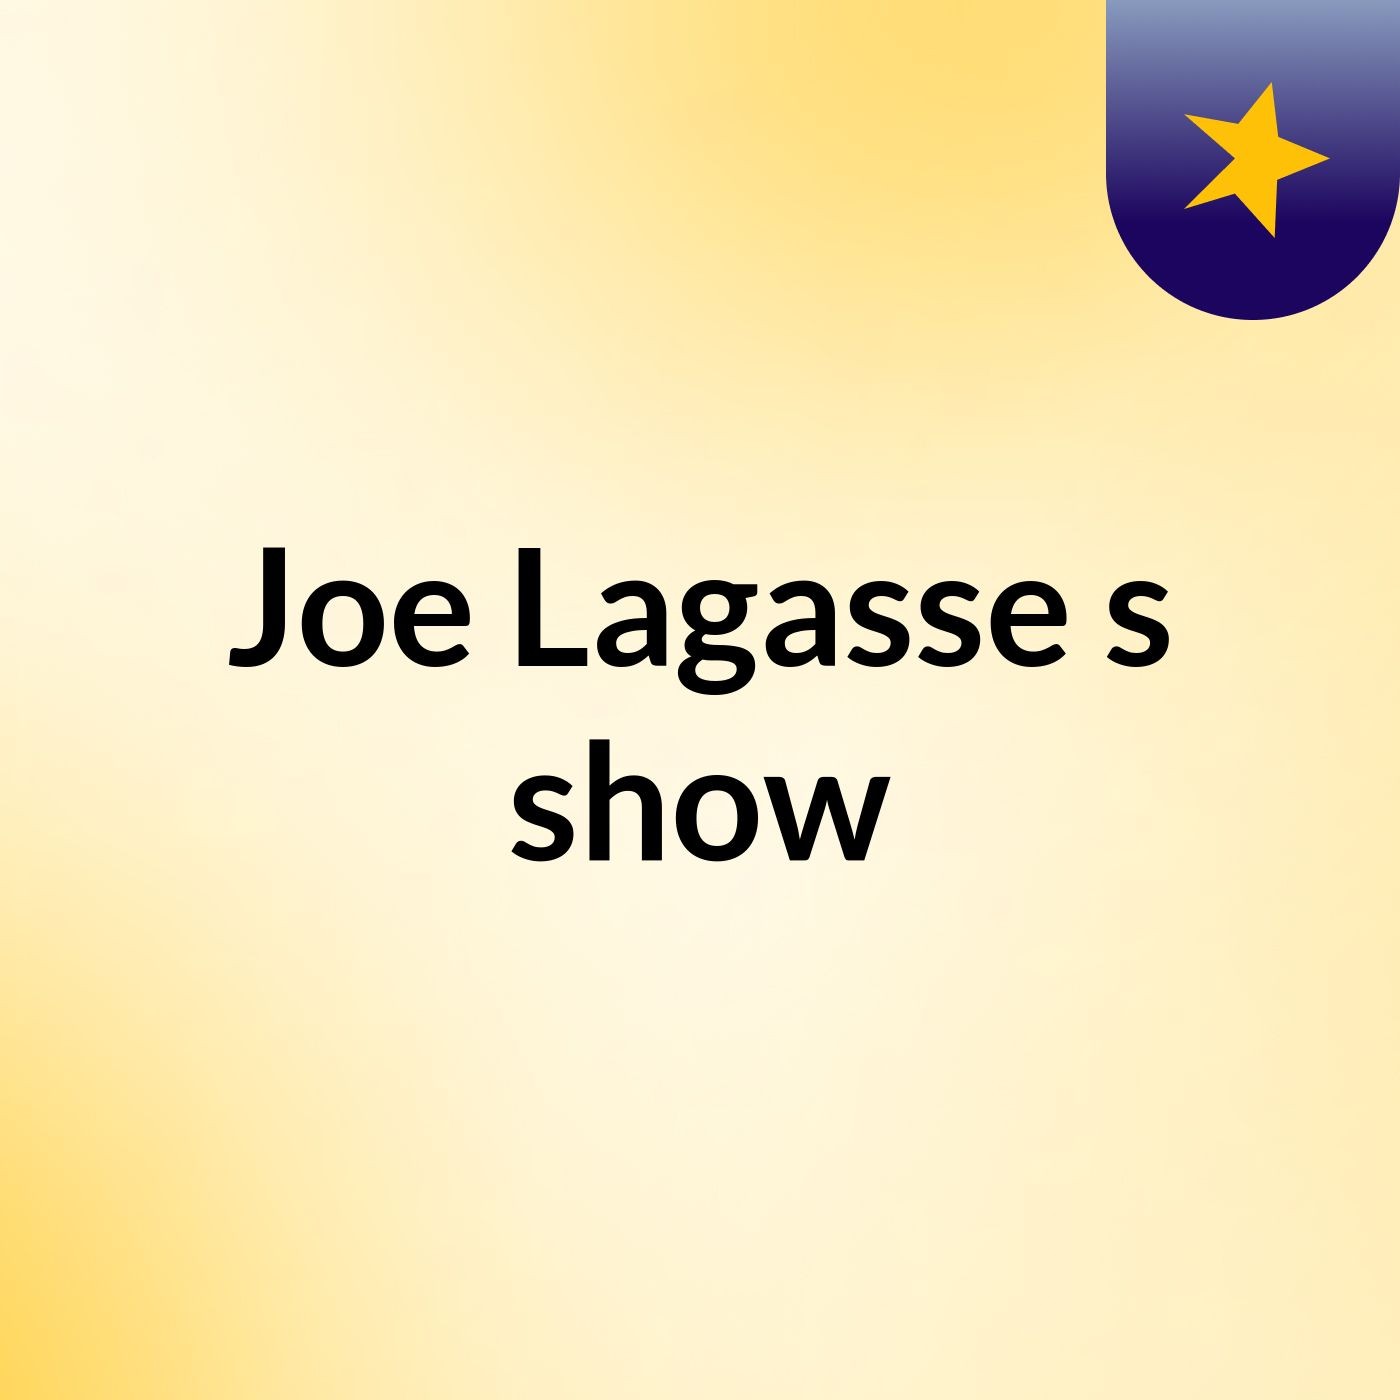 Joe Lagasse's show